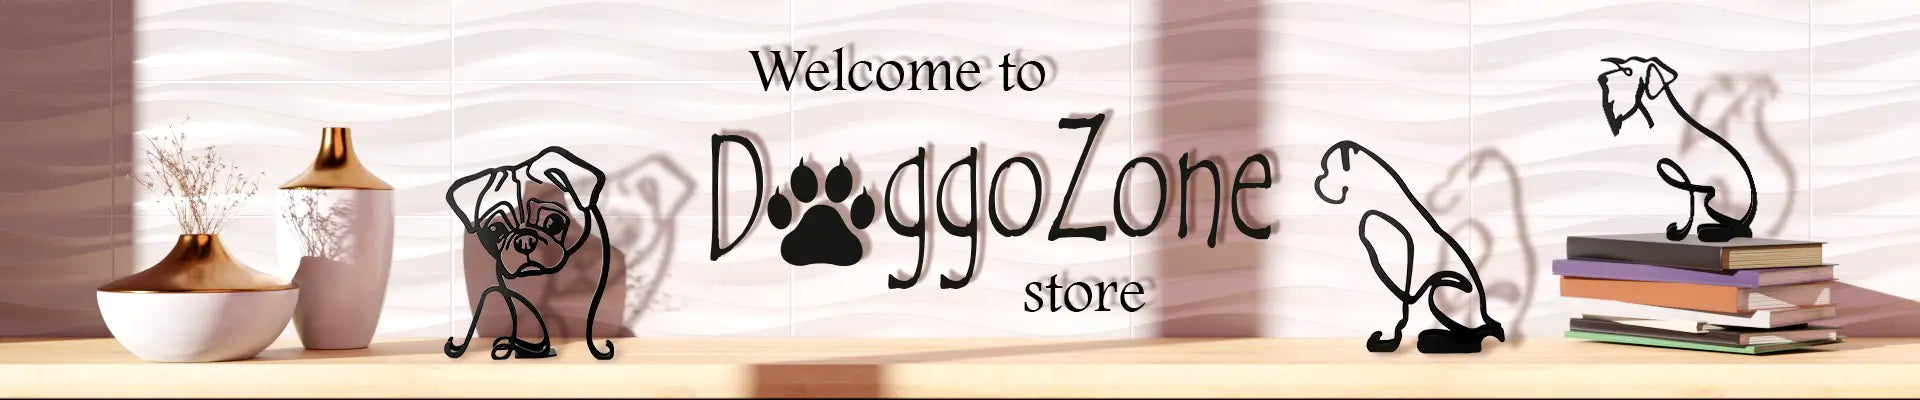 Doggo-zone shop banner